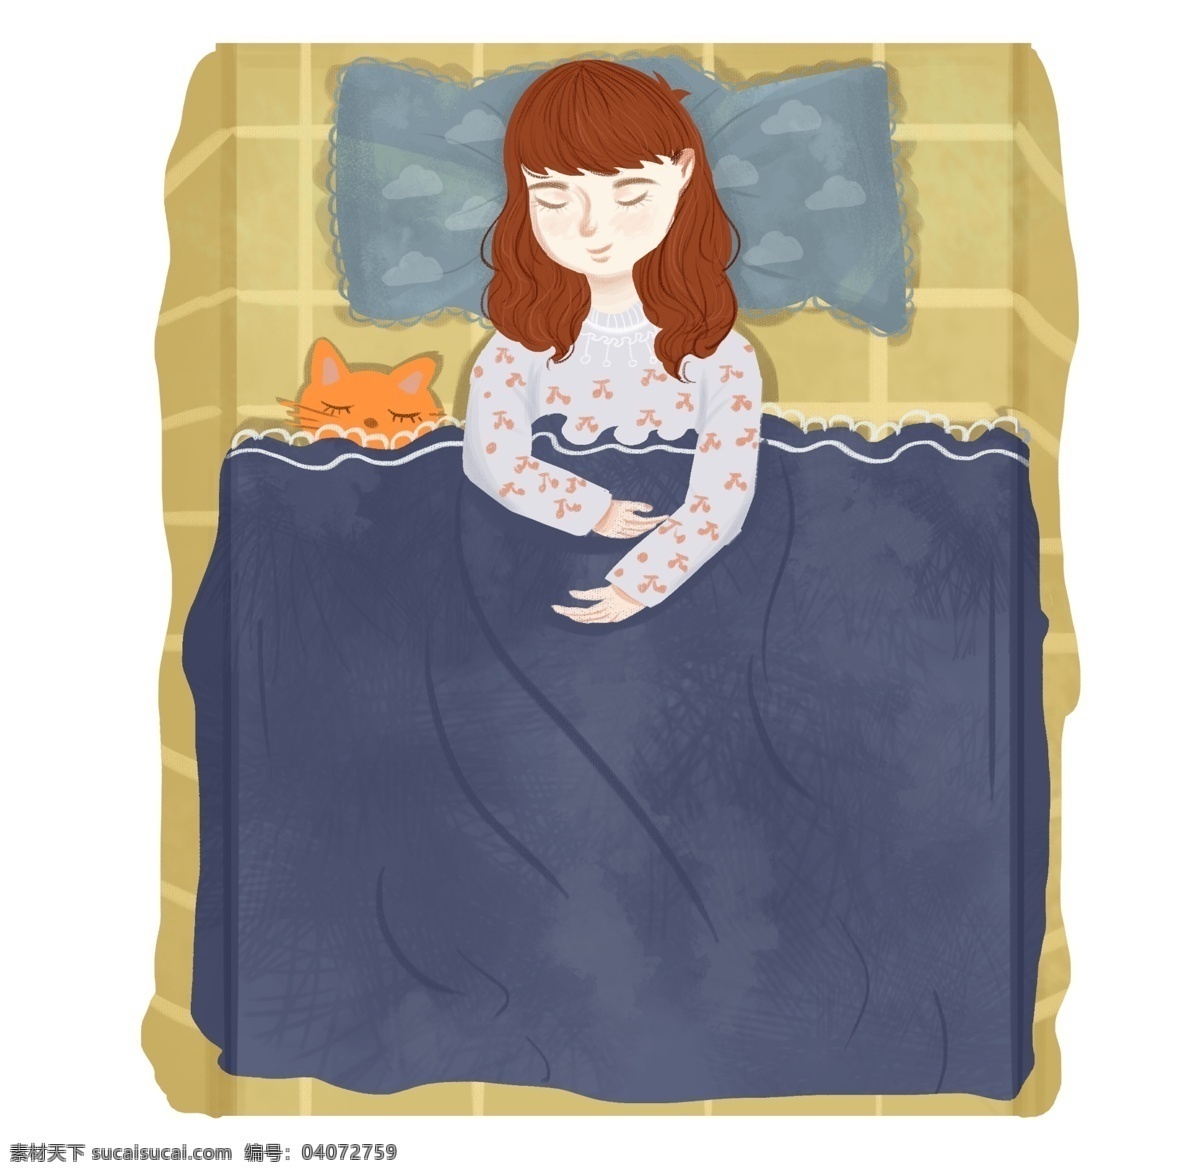 世界 睡眠 日 女孩 插画 睡觉的女孩 卡通插画 睡觉插画 睡眠插画 做梦插画 休息插画 红色的小熊